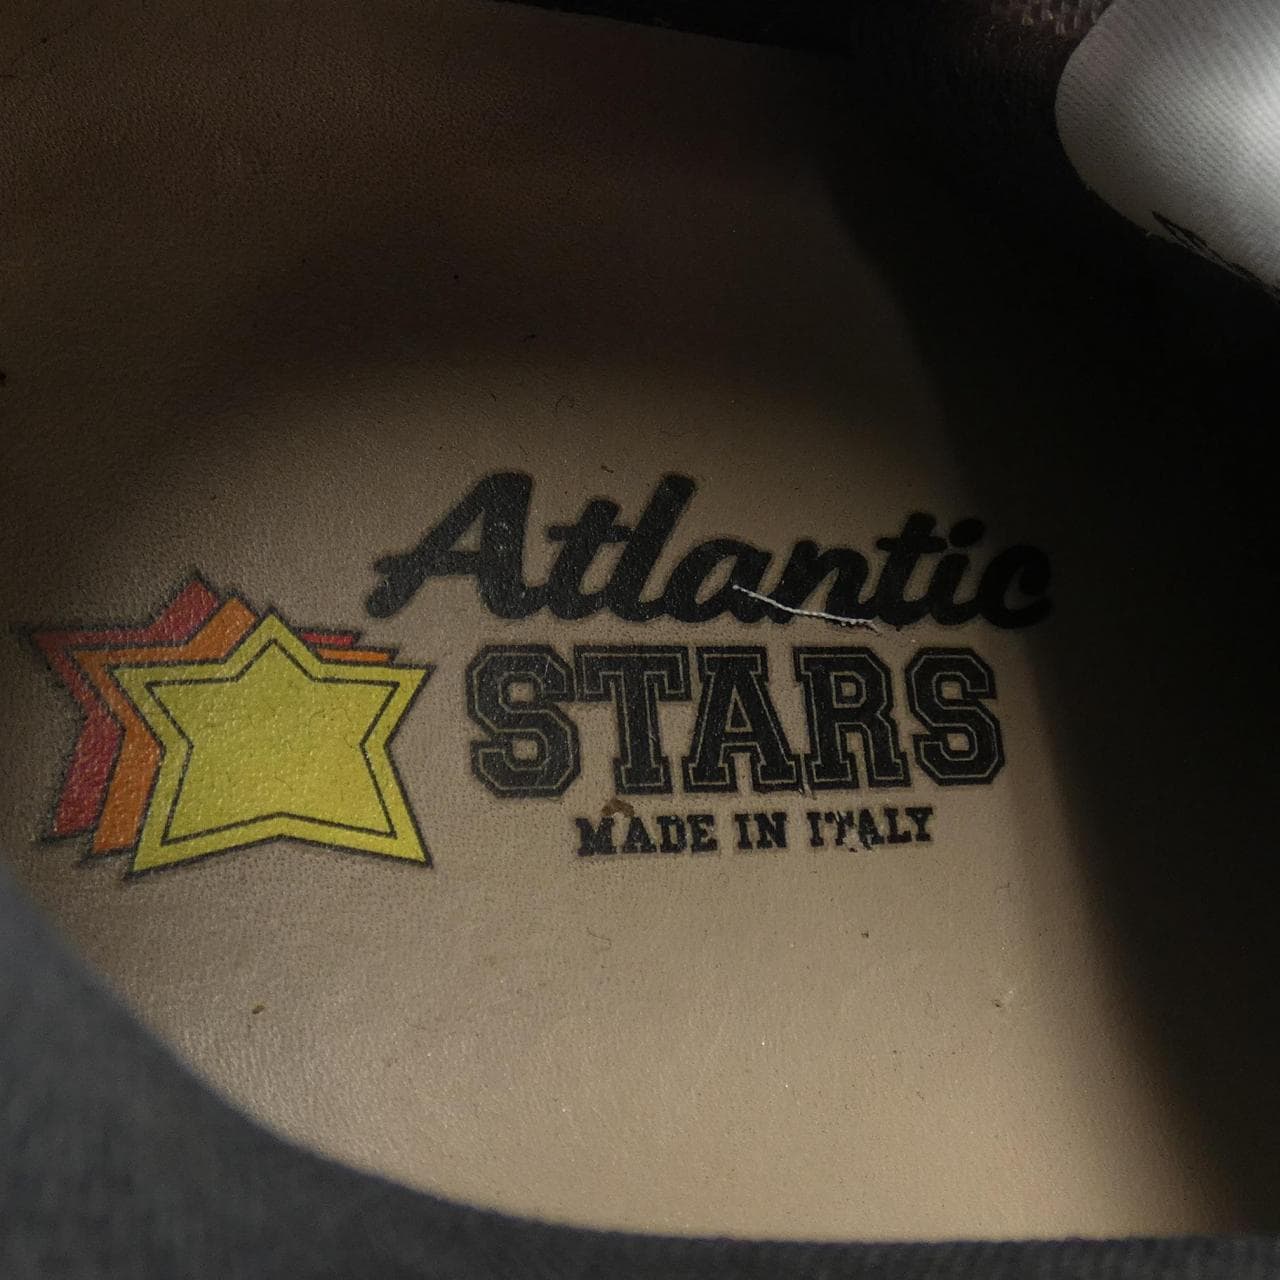 大西洋之星ATLANTIC STARS運動鞋